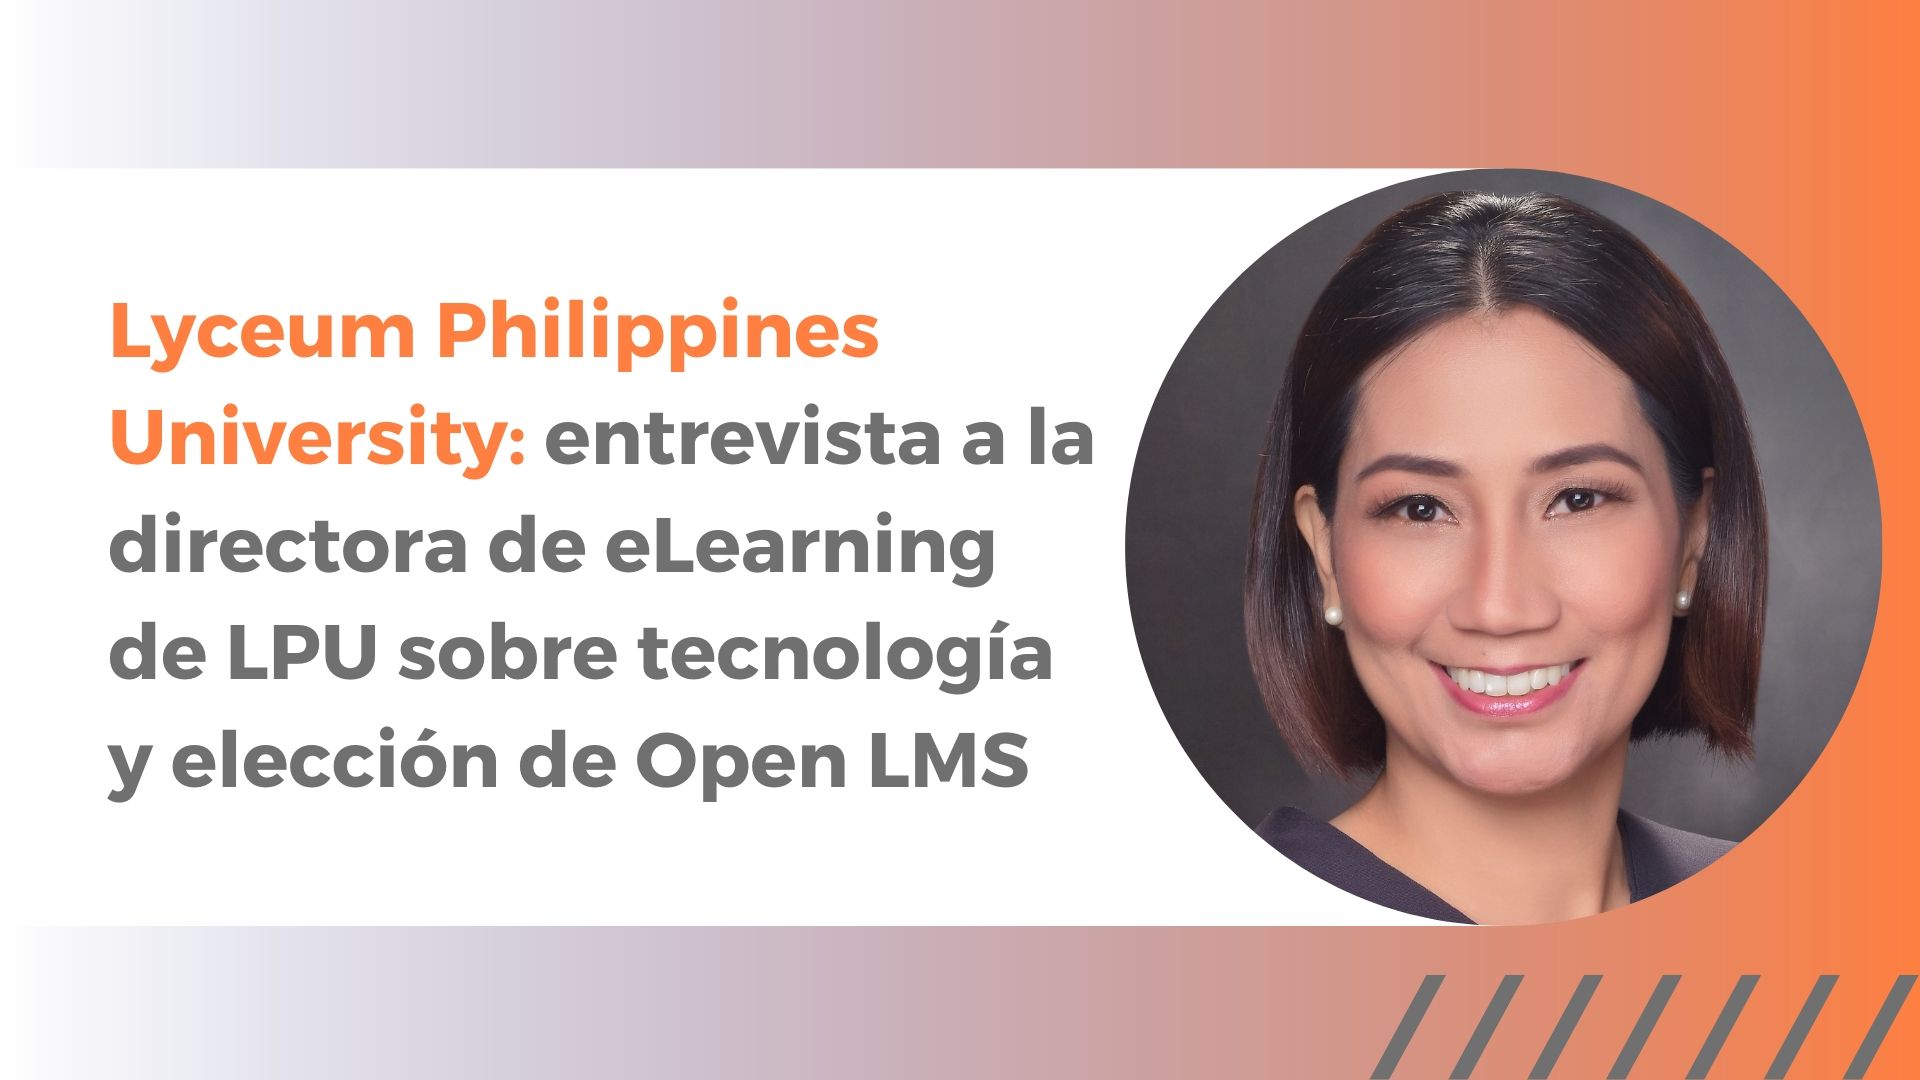 Lyceum Philippines University: entrevista a la directora de eLearning de LPU sobre tecnología y elección de Open LMS